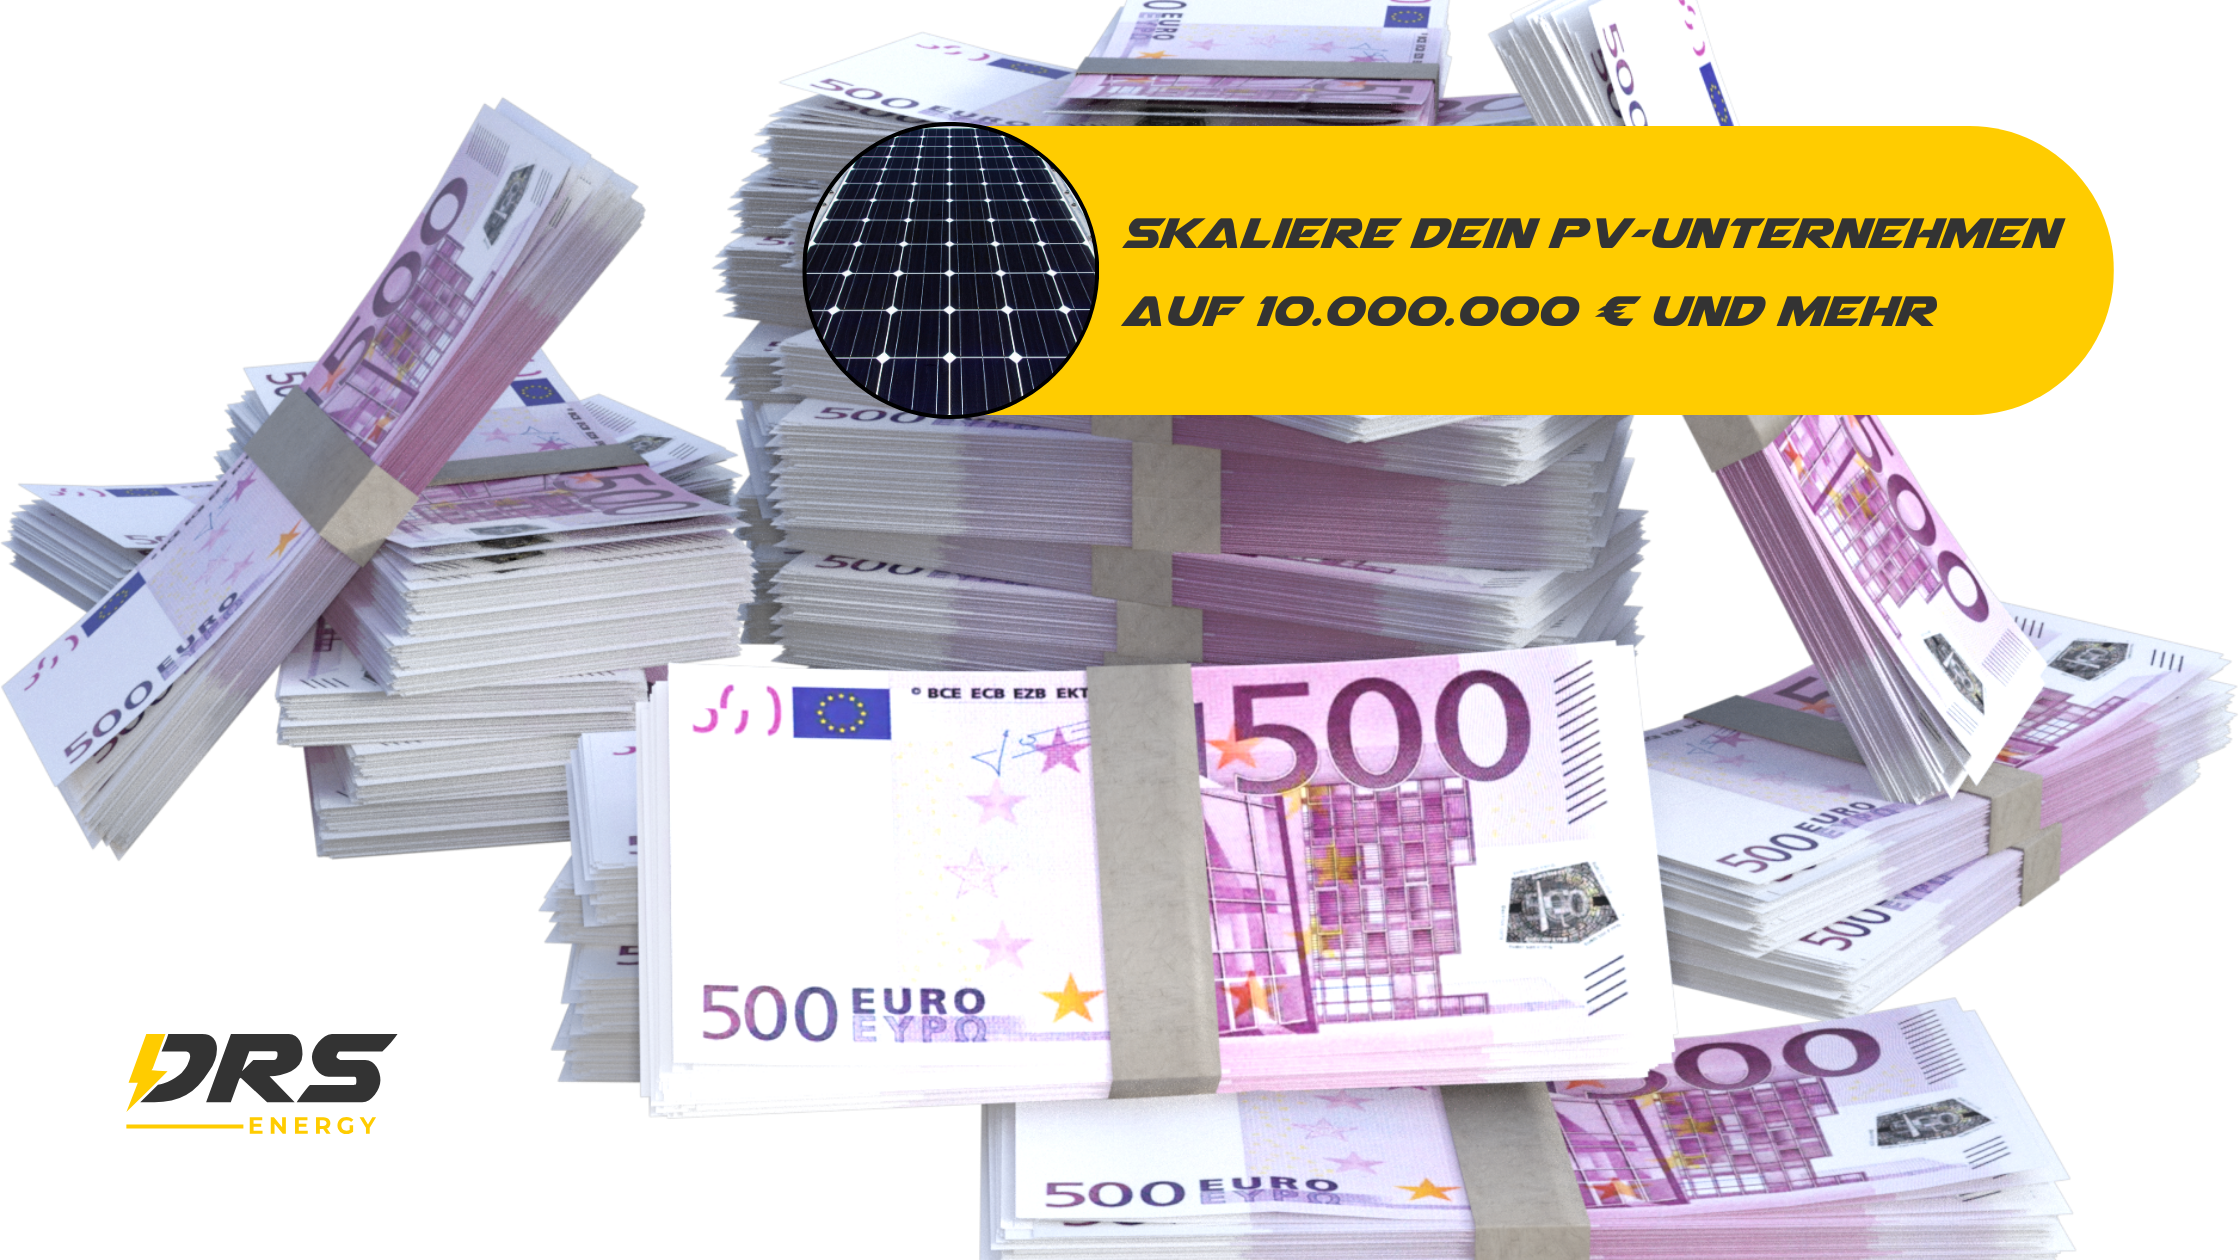 Wie du dein PV-Unternehmen auf 10 Millionen Euro skalierst (und mehr)